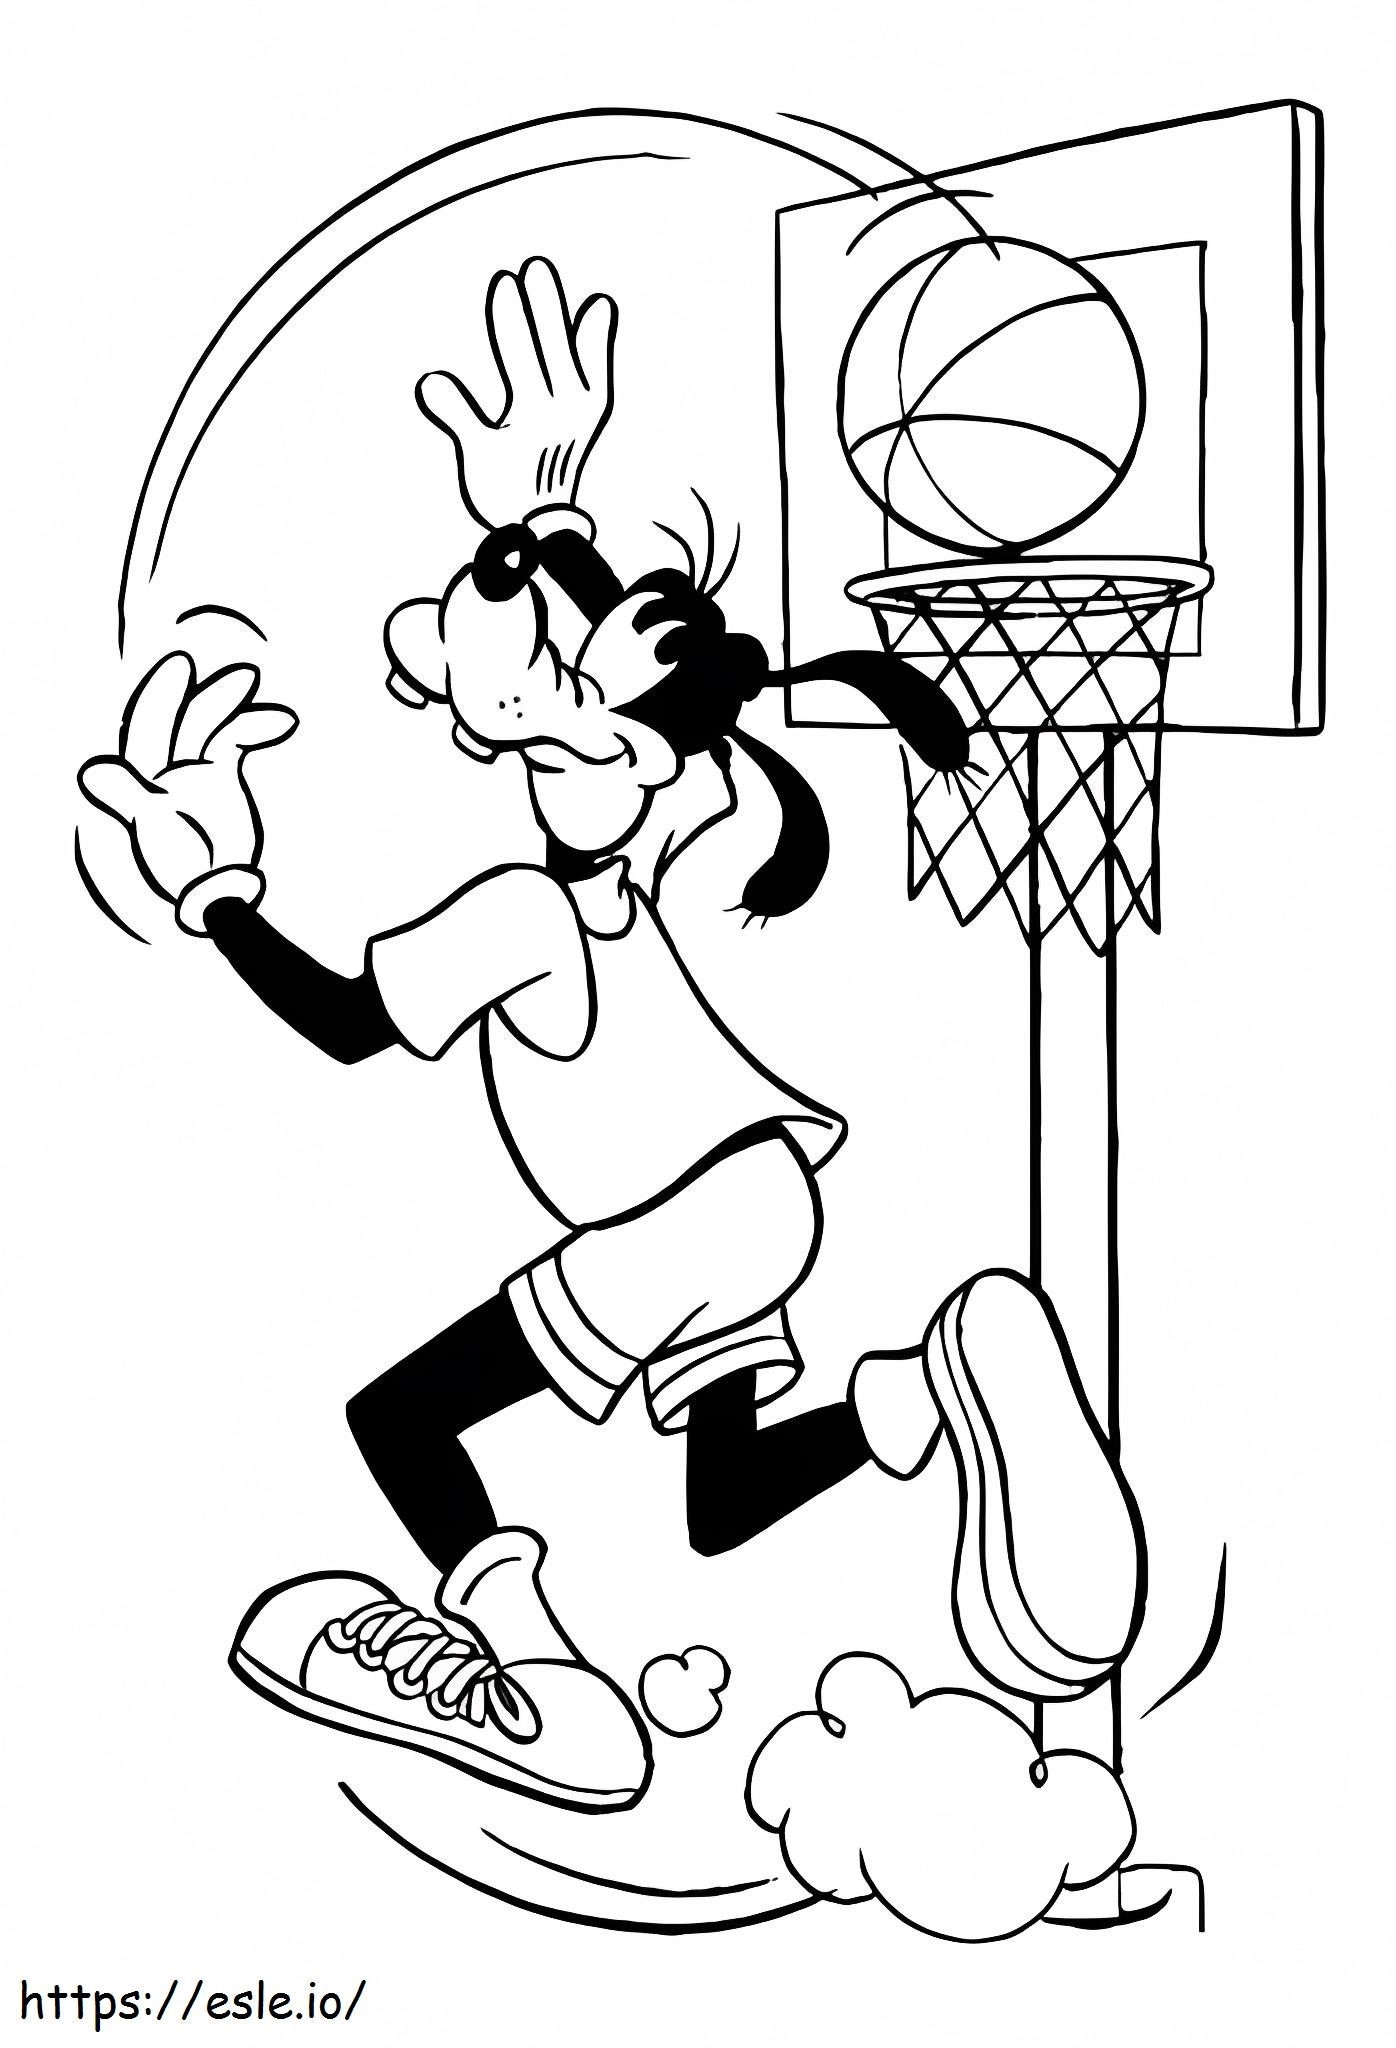 Goofy aan het basketballen kleurplaat kleurplaat